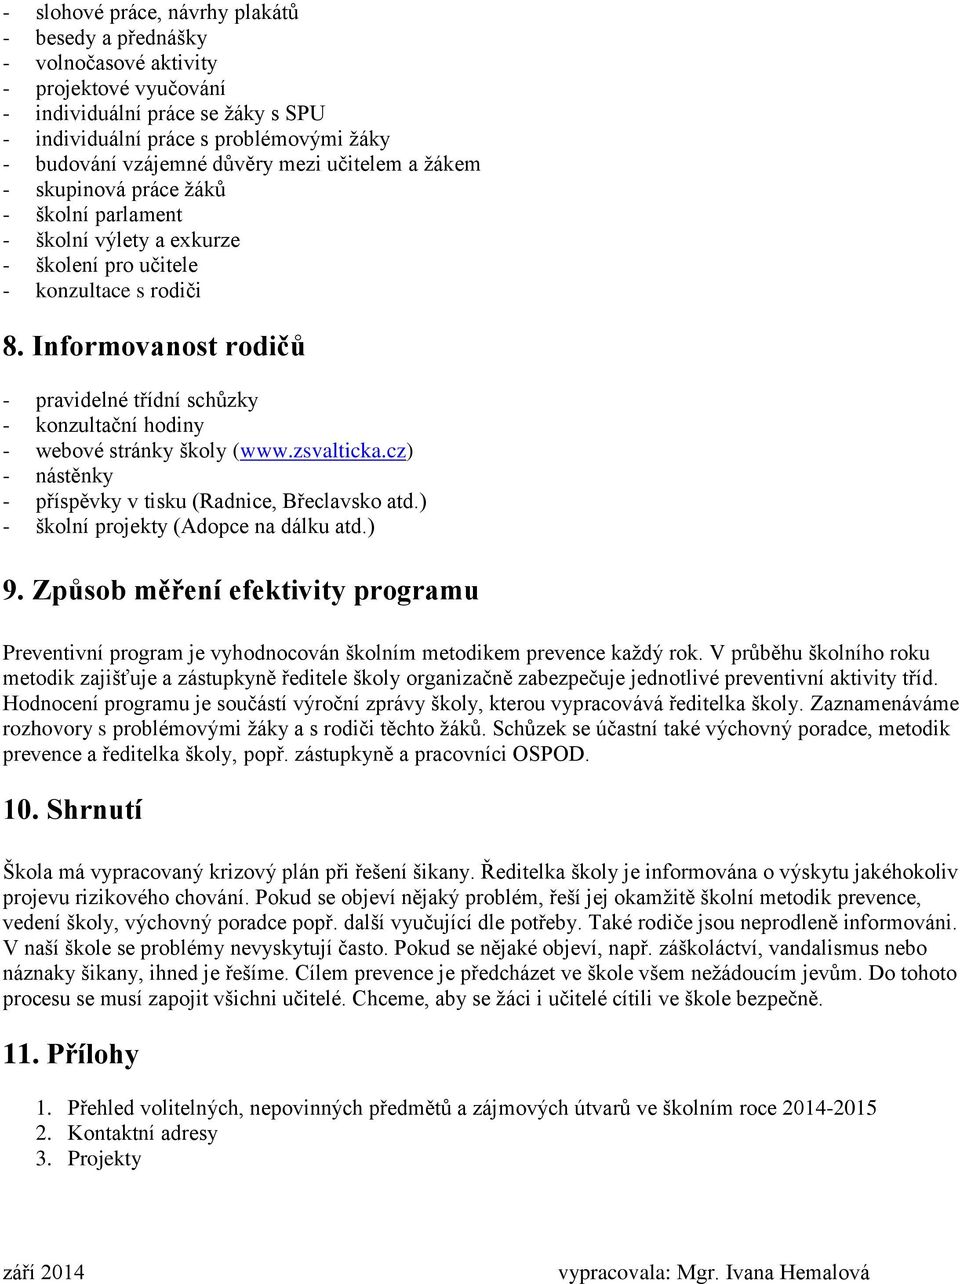 Informovanost rodičů - pravidelné třídní schůzky - konzultační hodiny - webové stránky školy (www.zsvalticka.cz) - nástěnky - příspěvky v tisku (Radnice, Břeclavsko atd.